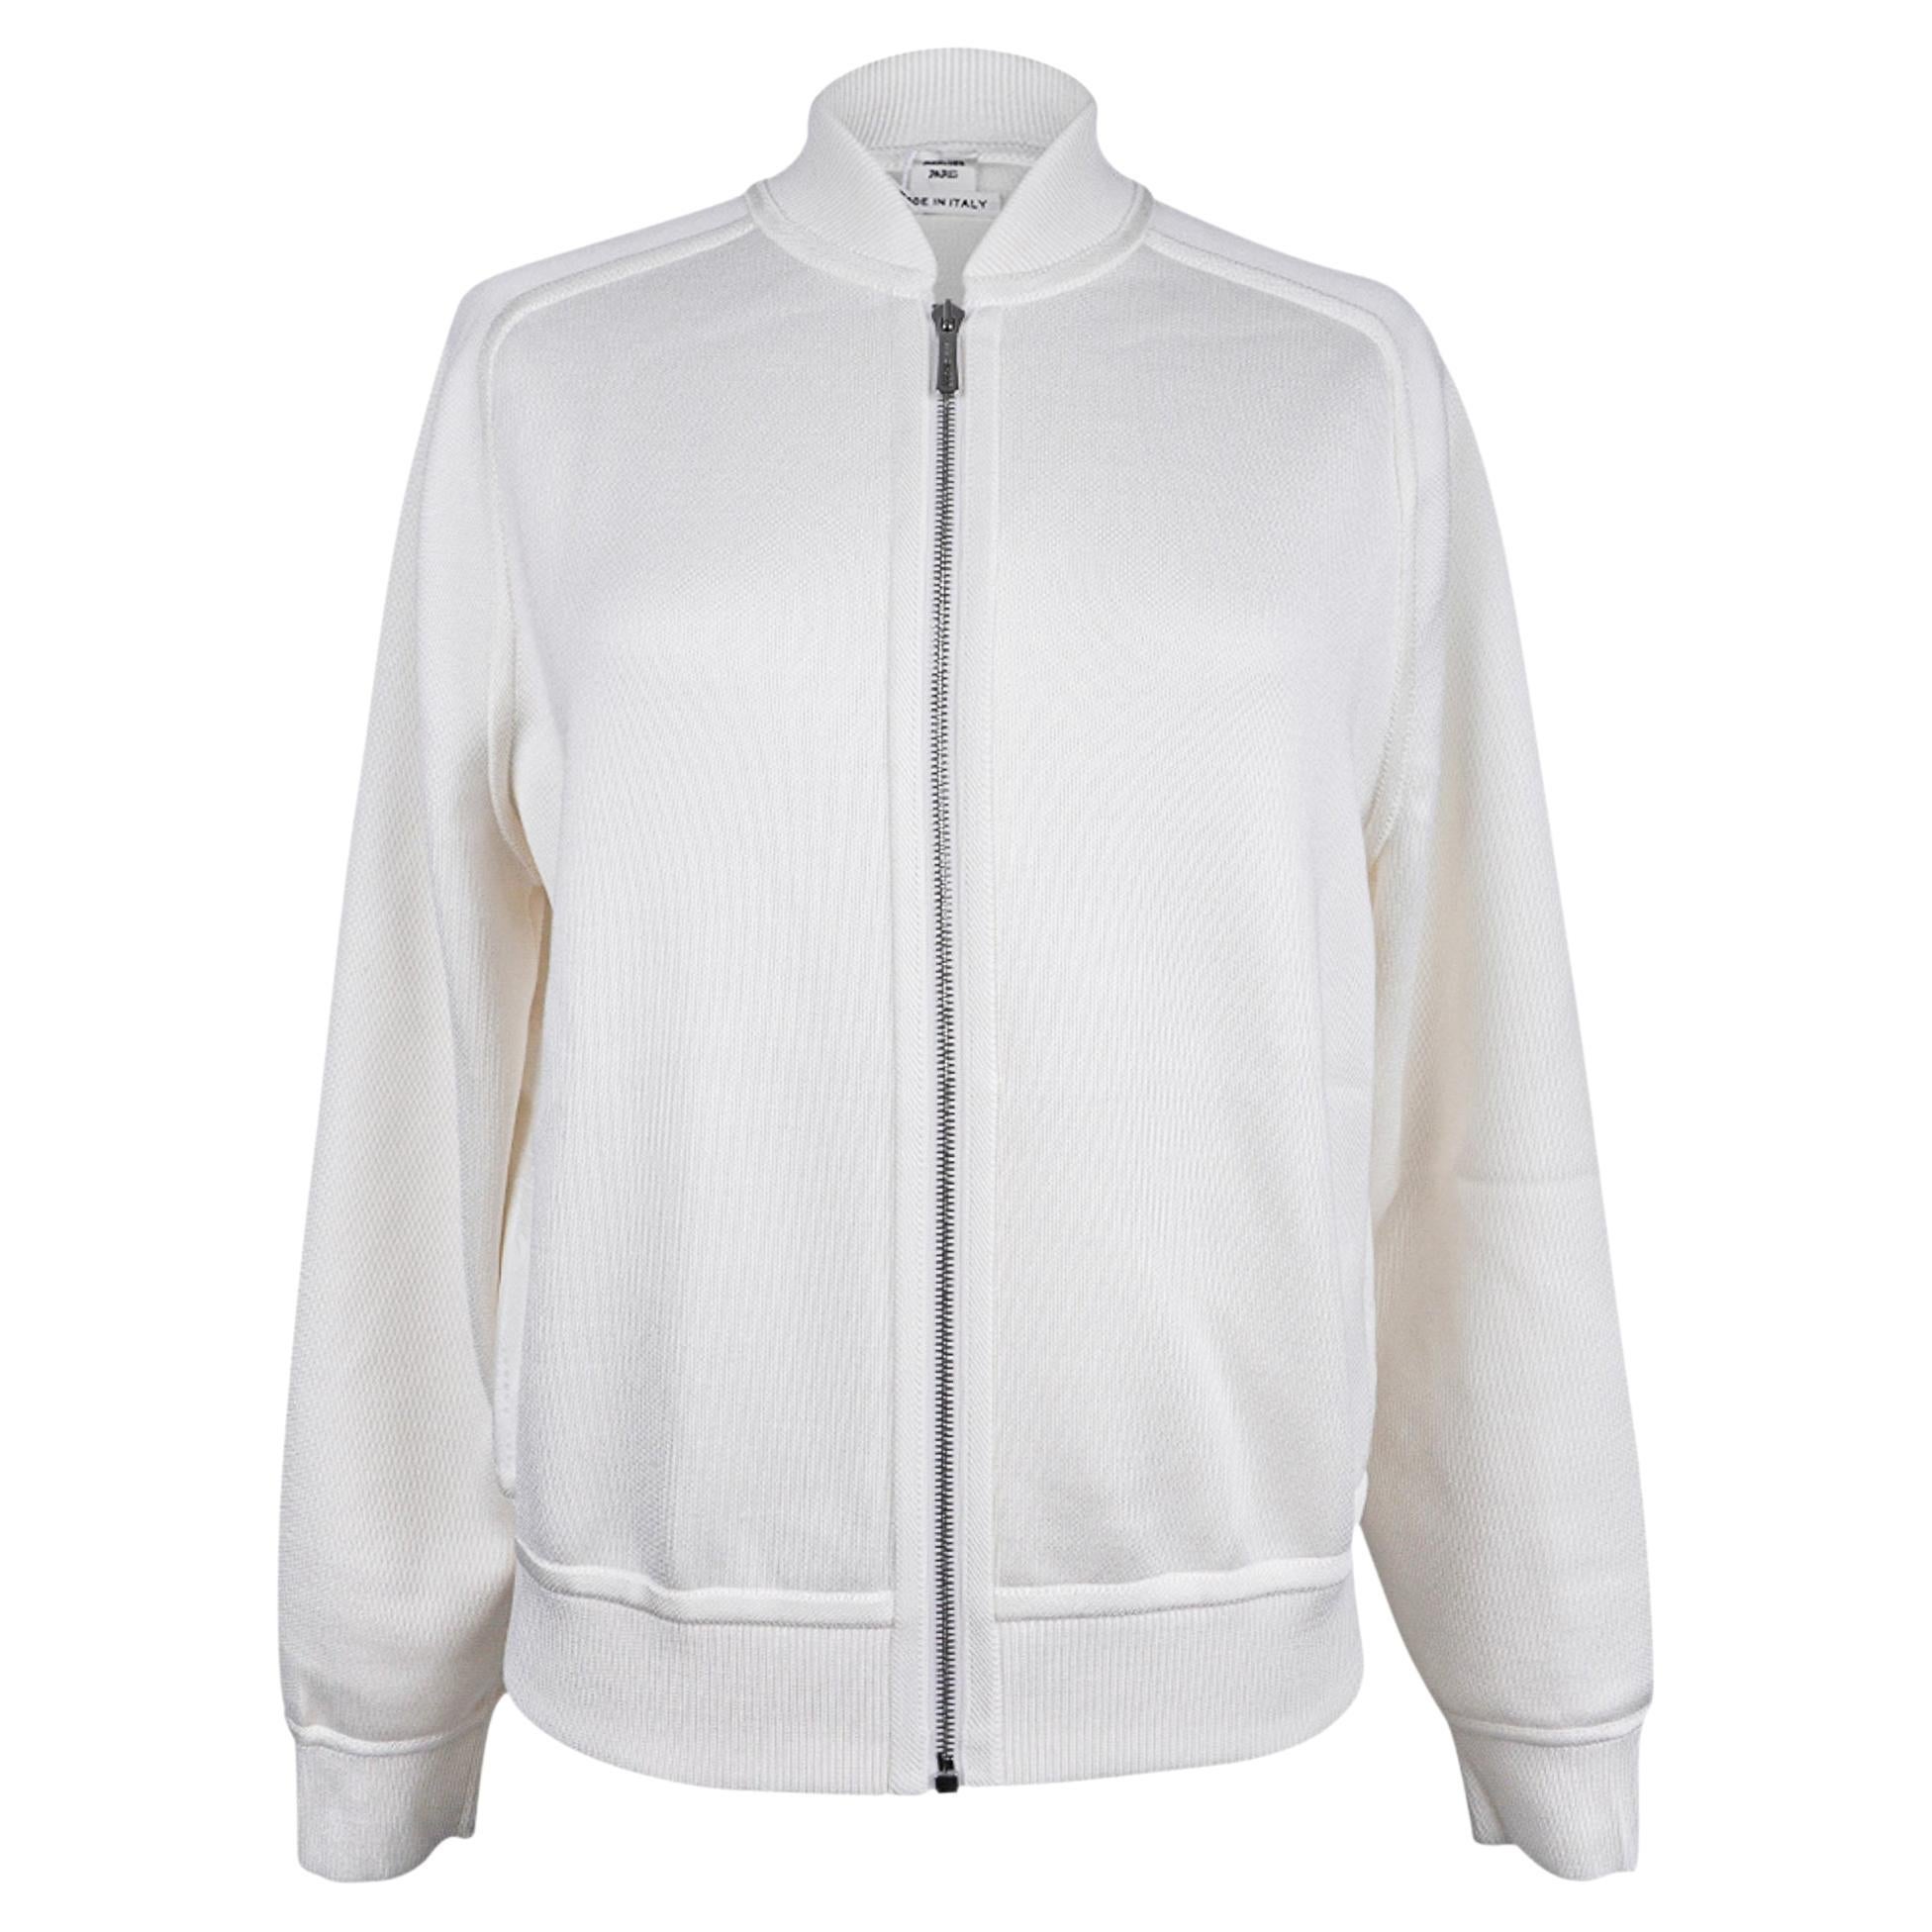 Veste Cardigan Hermès blanche d'hiver avec fermeture éclair et fermoir à bouton-pression, taille 38/6